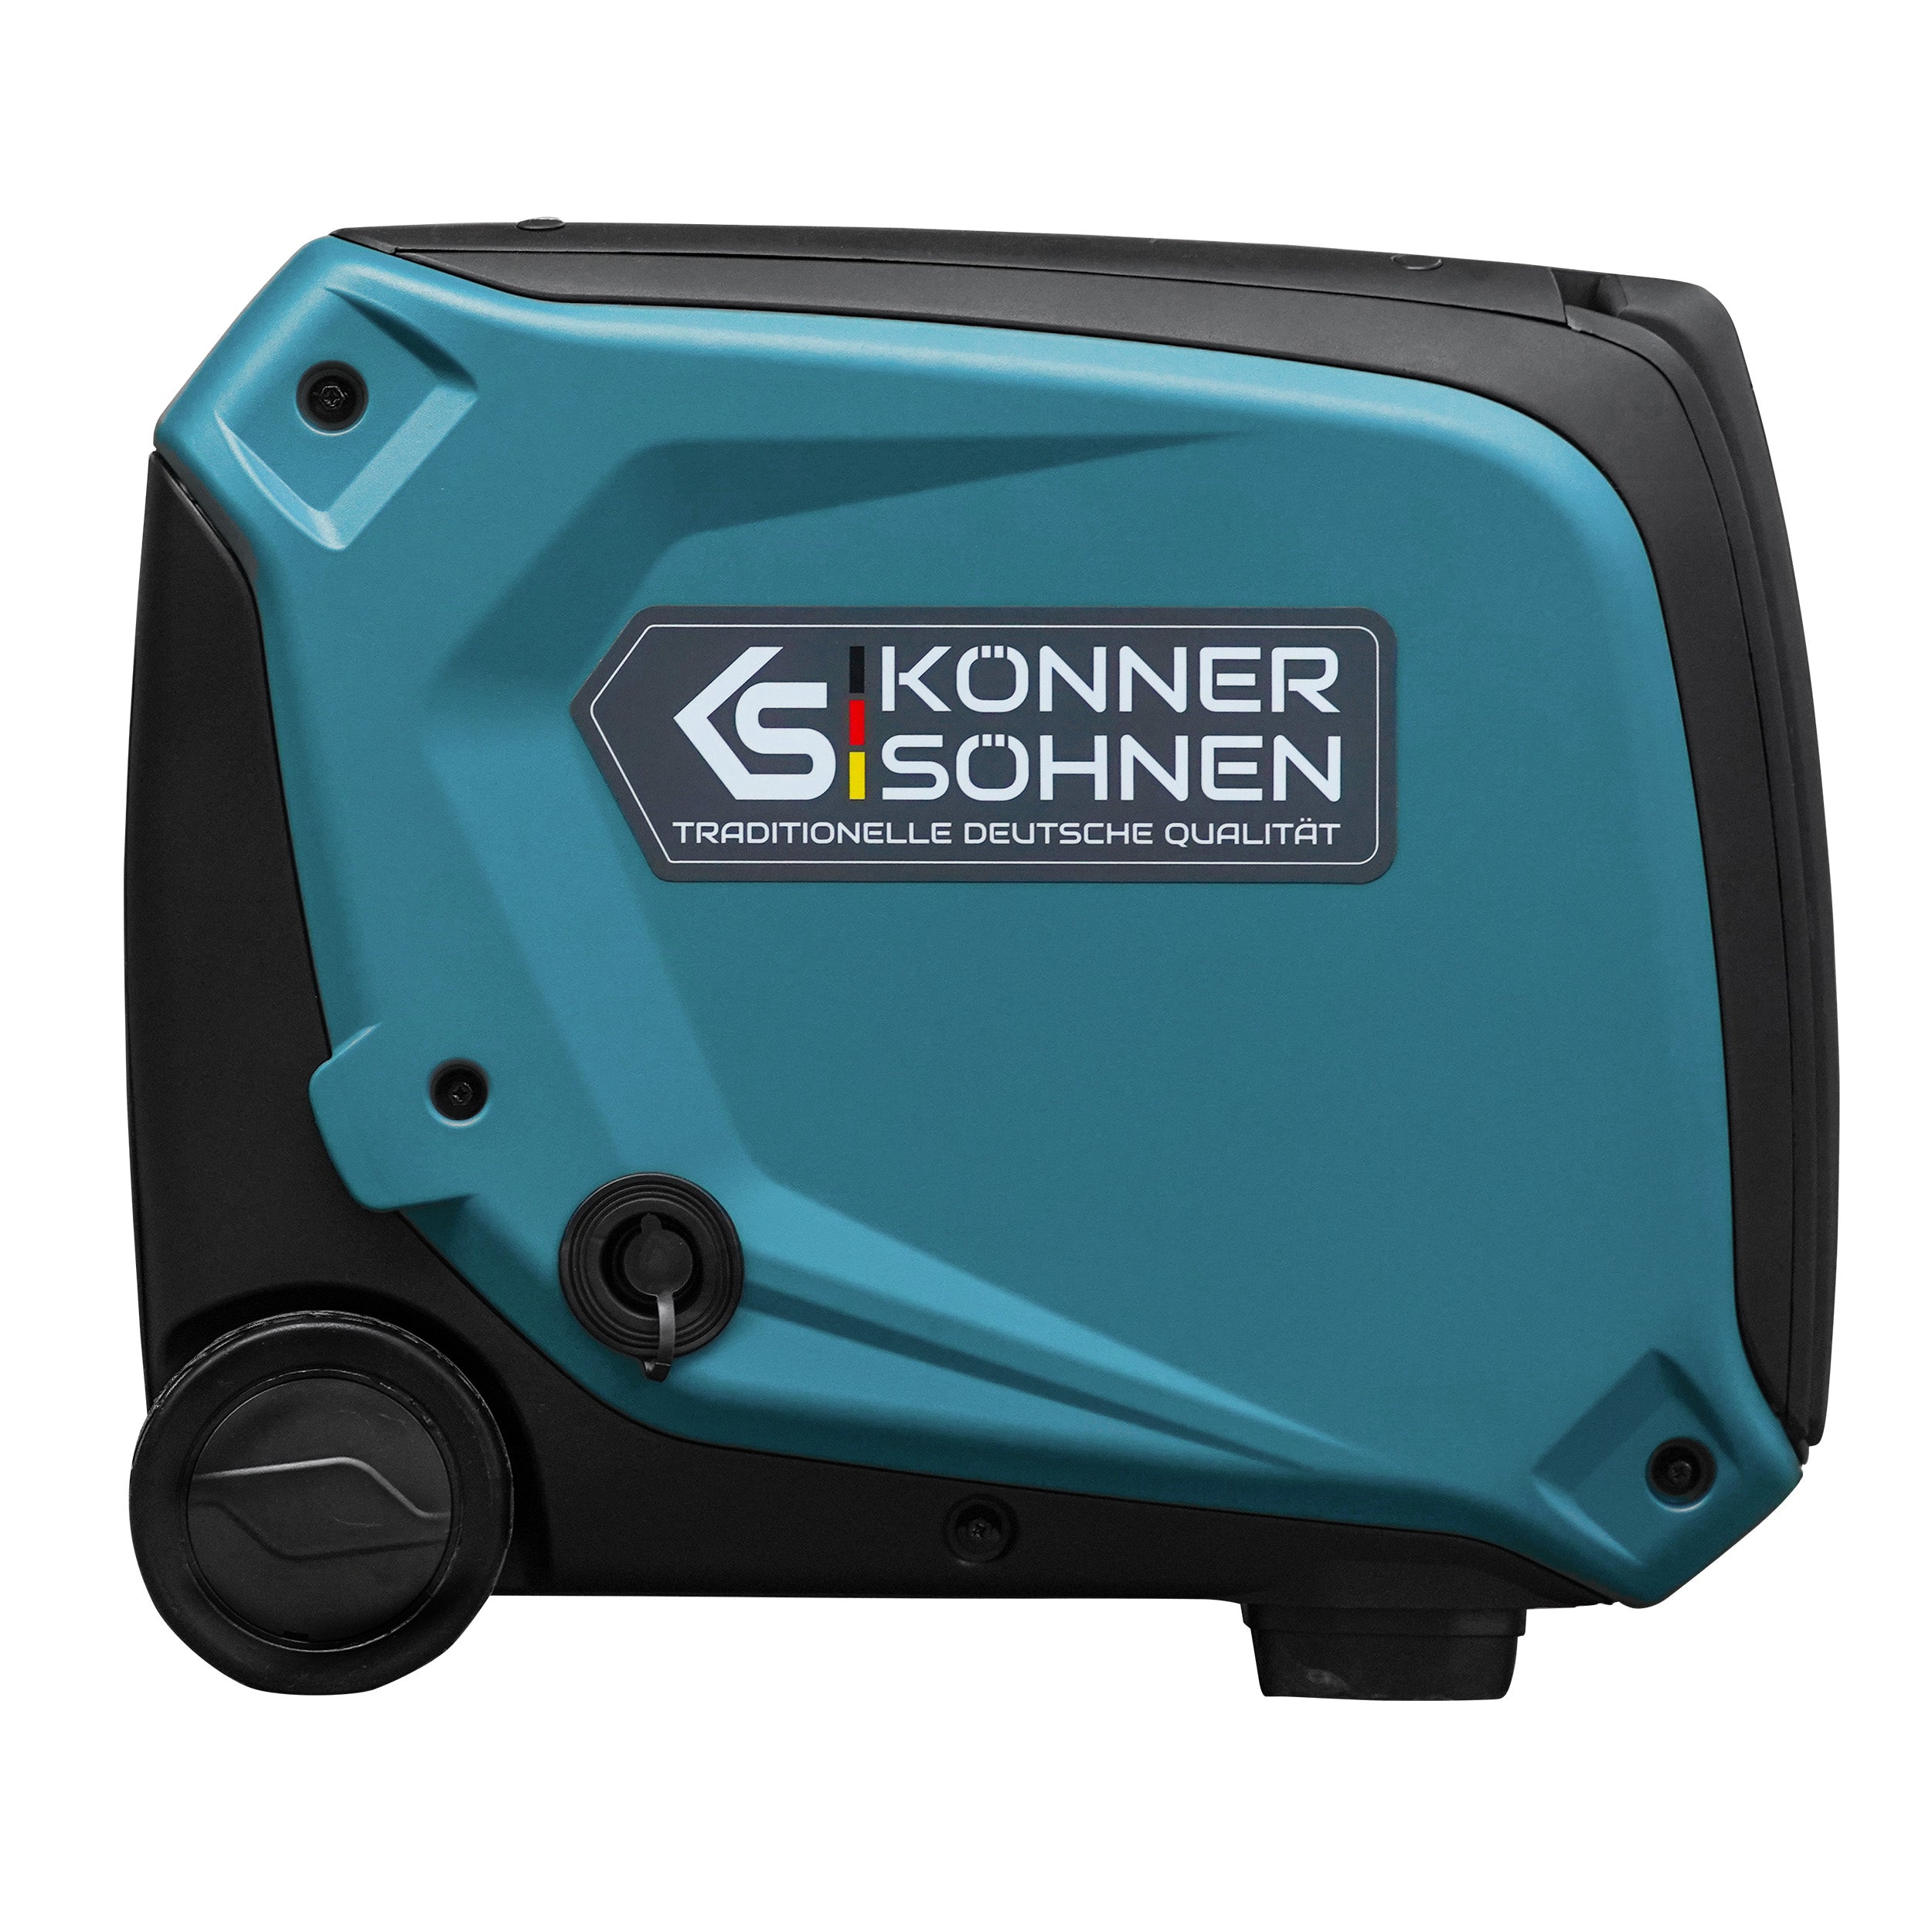 LPG/gasoline inverter generator KS 4000iEG S